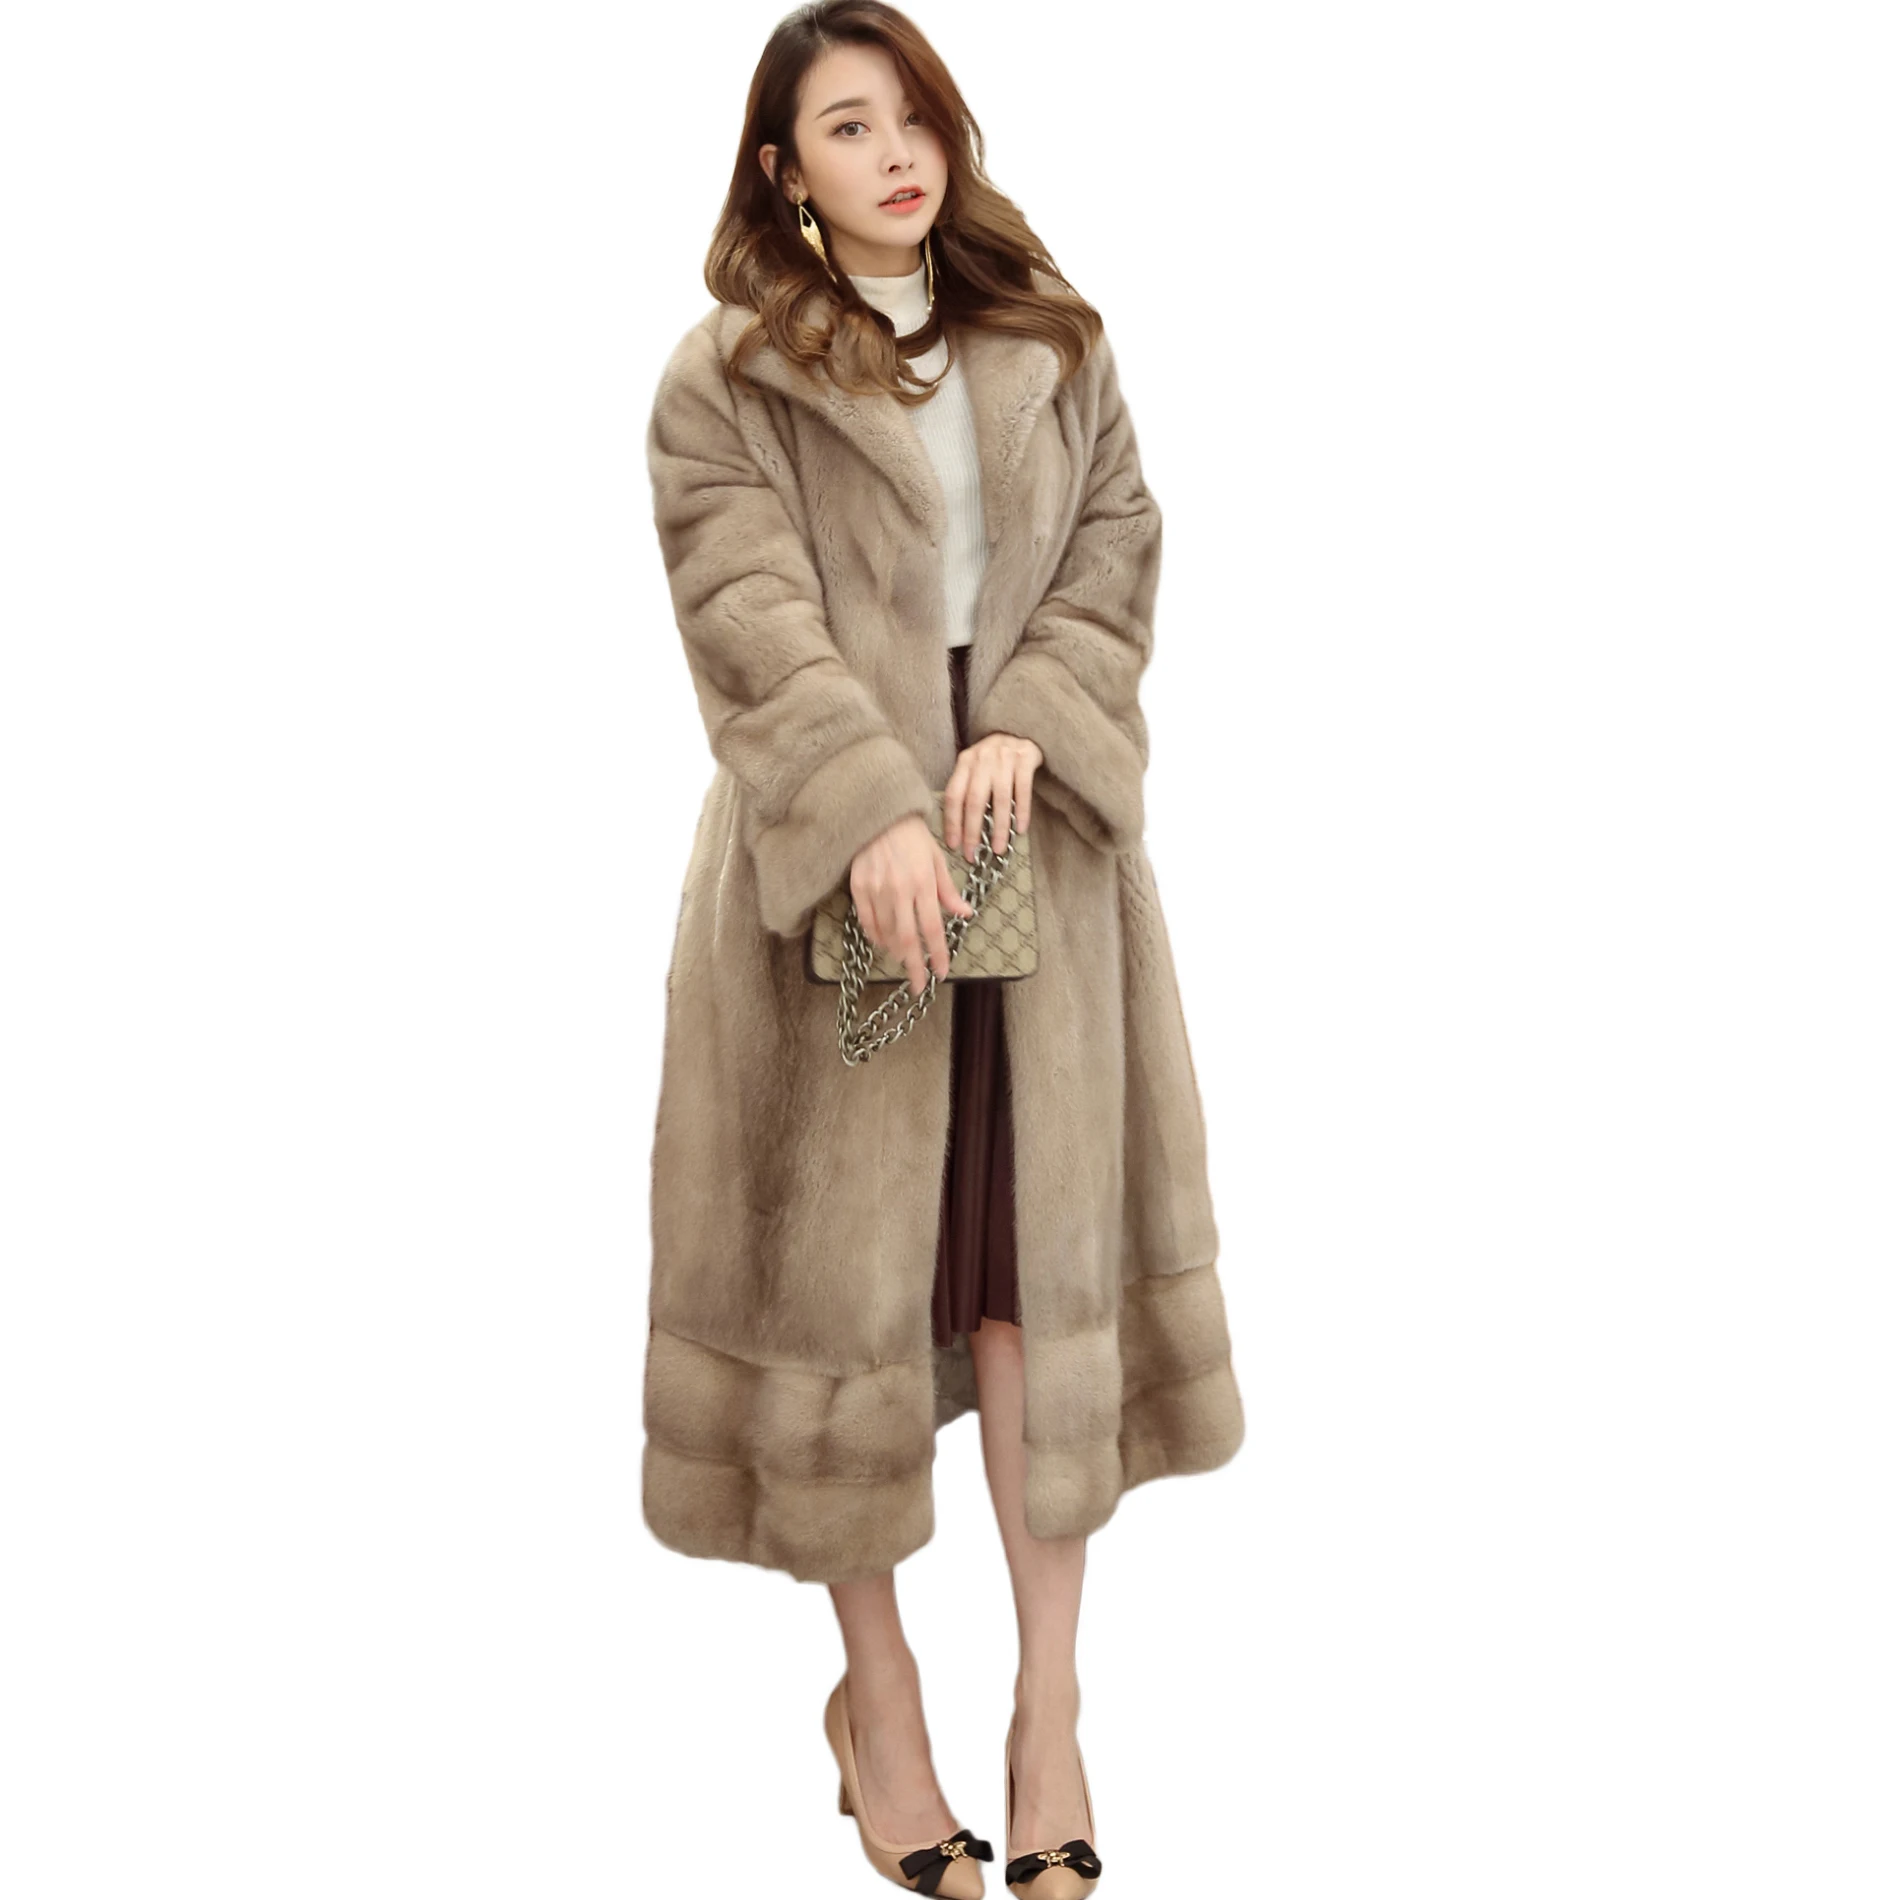 Новая женская норка, норковый мех пальто, кожаная куртка женские модели весь Diaoqiu 1009